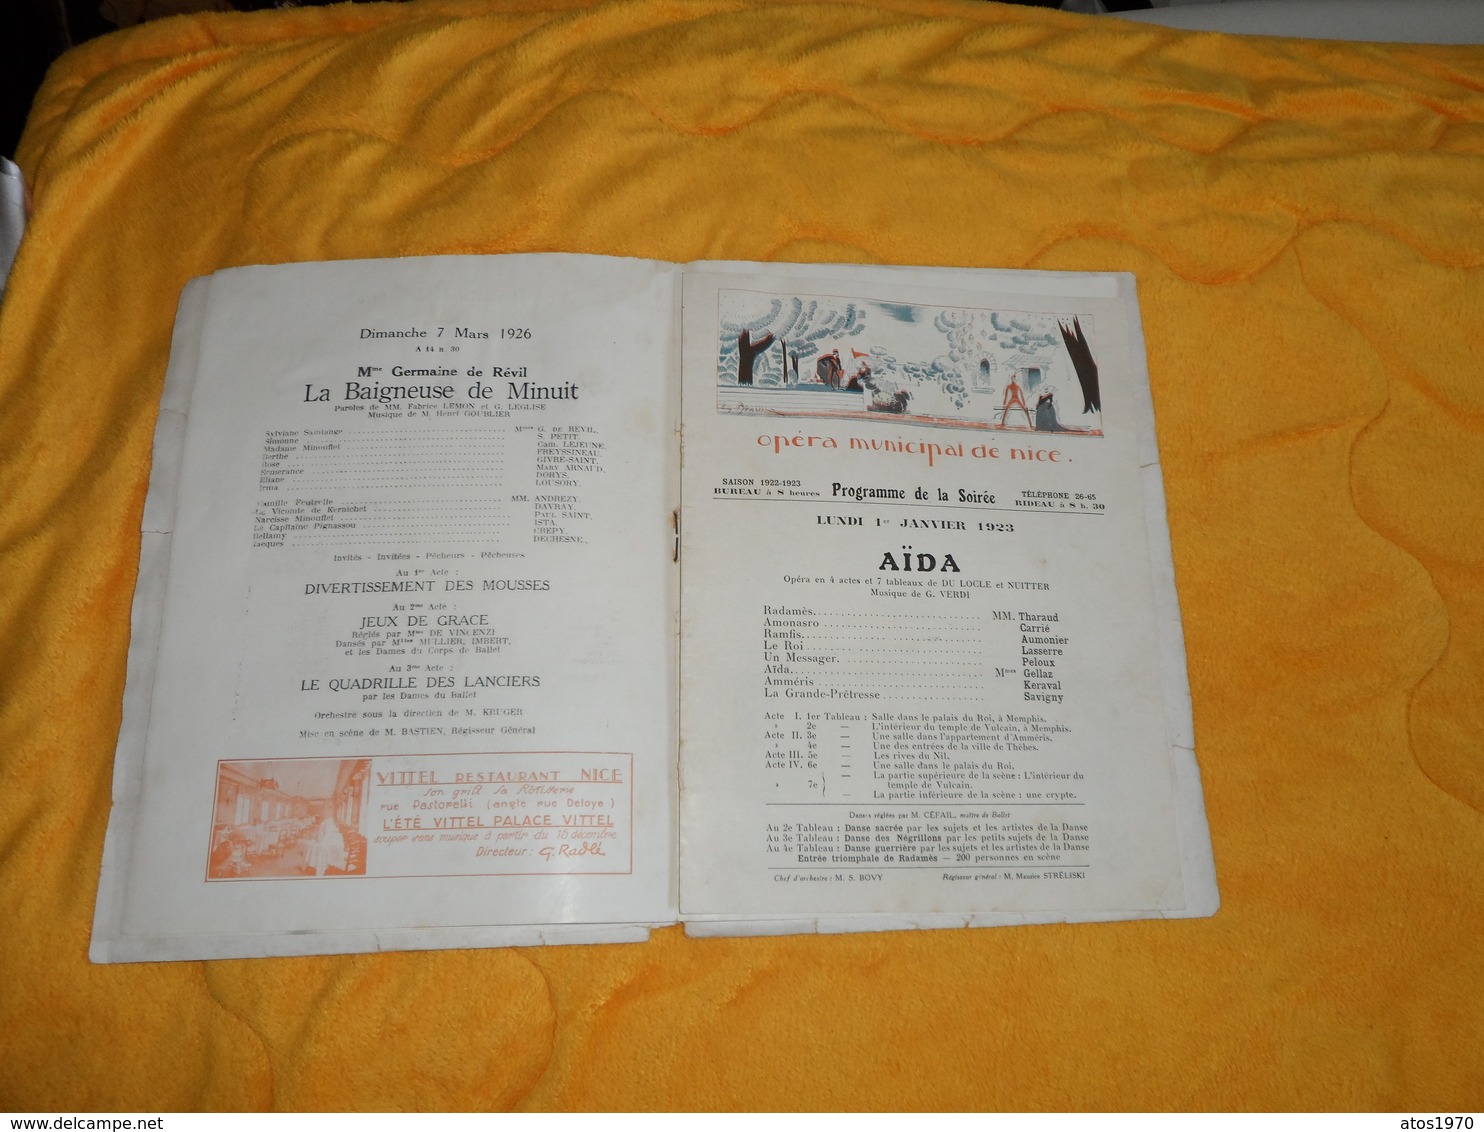 LIVRET PROGRAMME ANCIEN DE 1923 ET 1926. / PUBLICITE BOUTIQUES DE NICE, PEUGEOT, LAURENT...LA BAIGNEUSE DE MINUIT, AIDA,